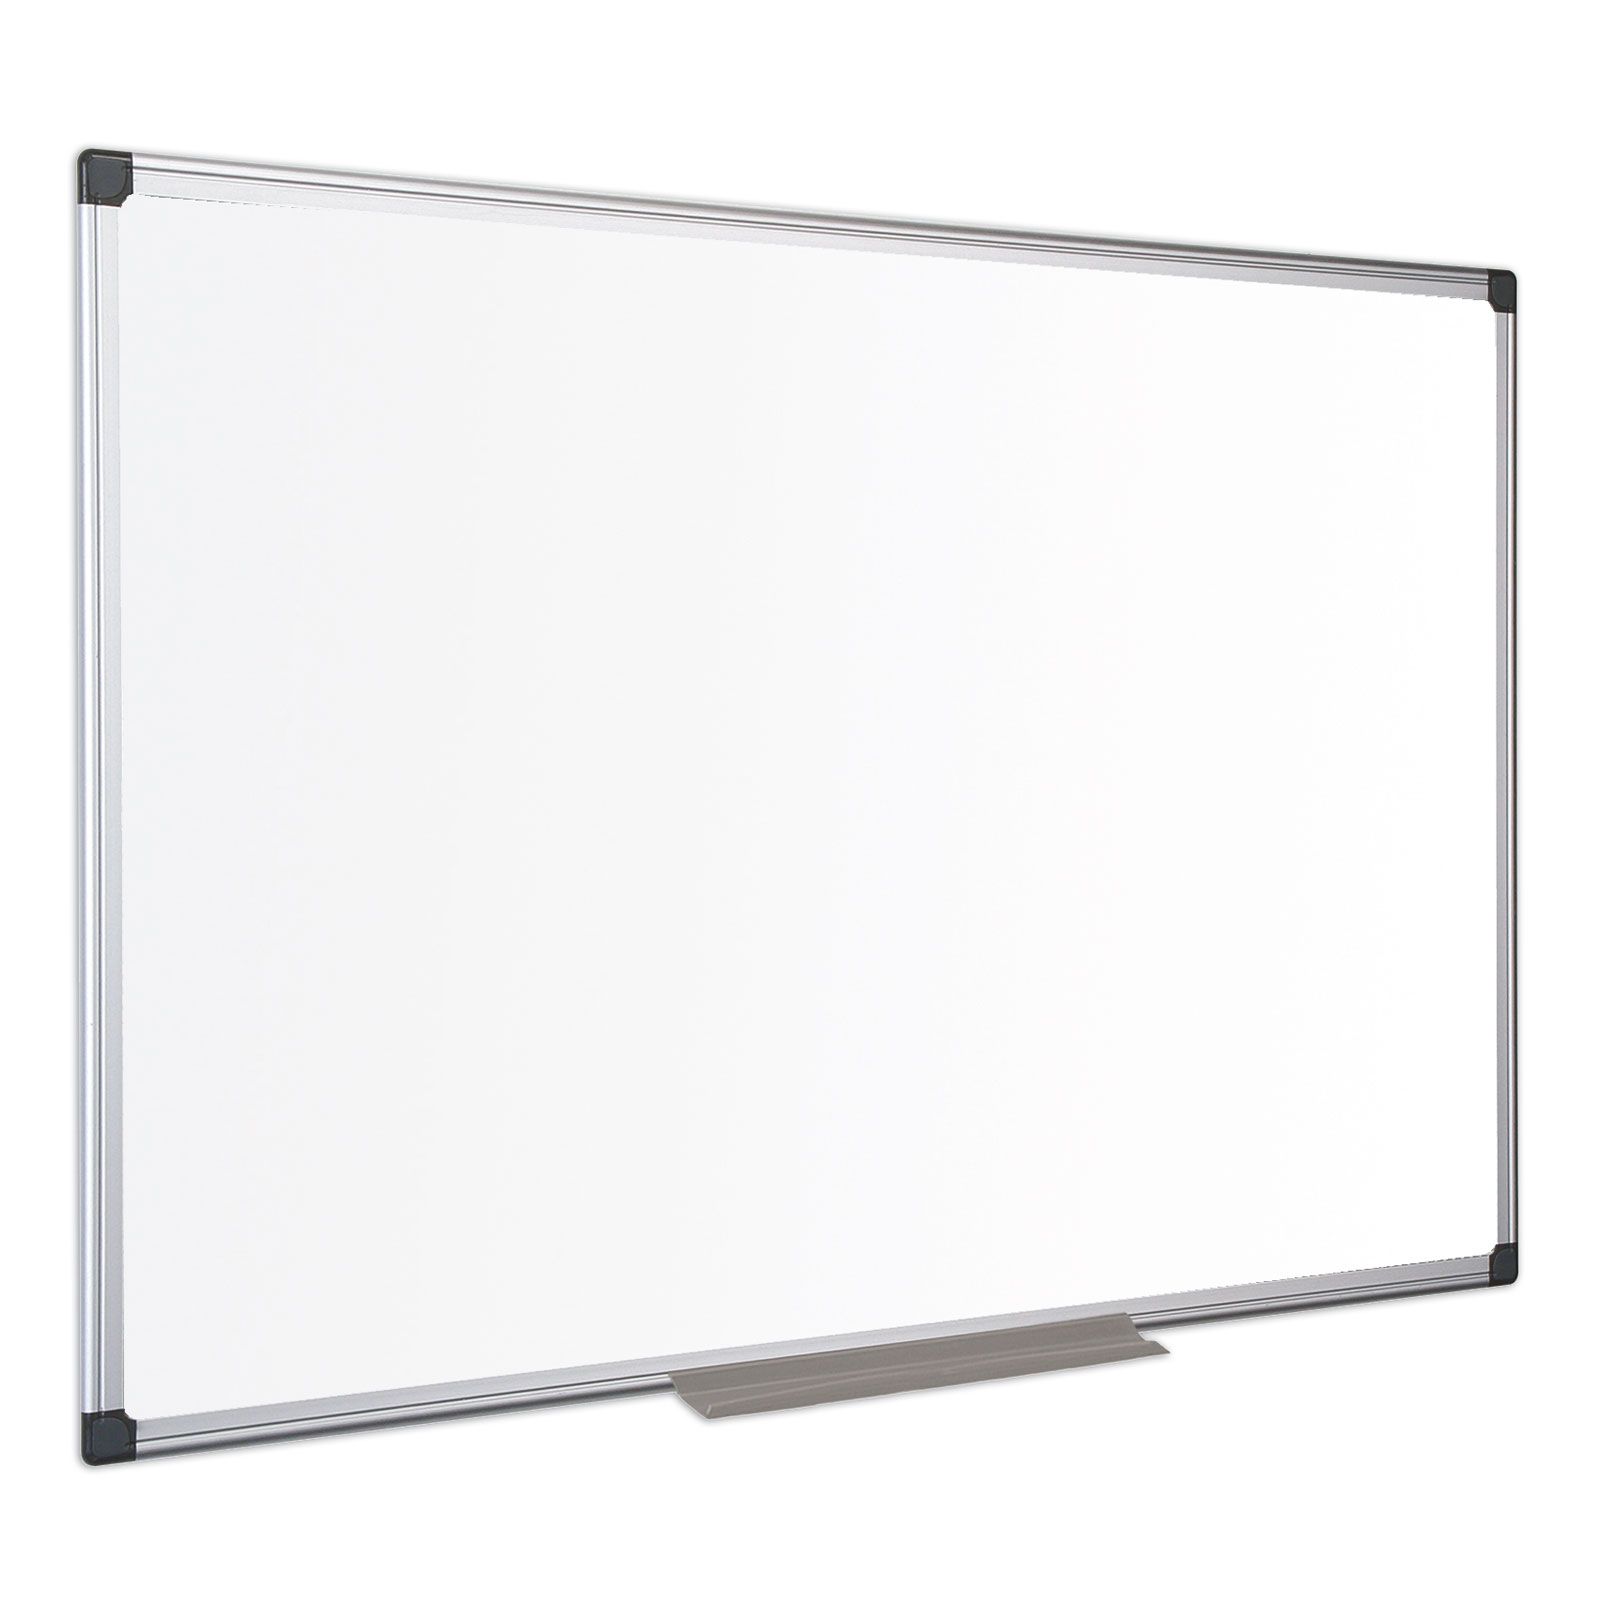 Feuille de tableau blanc 60x40 cm magnétique, feuille magnétique